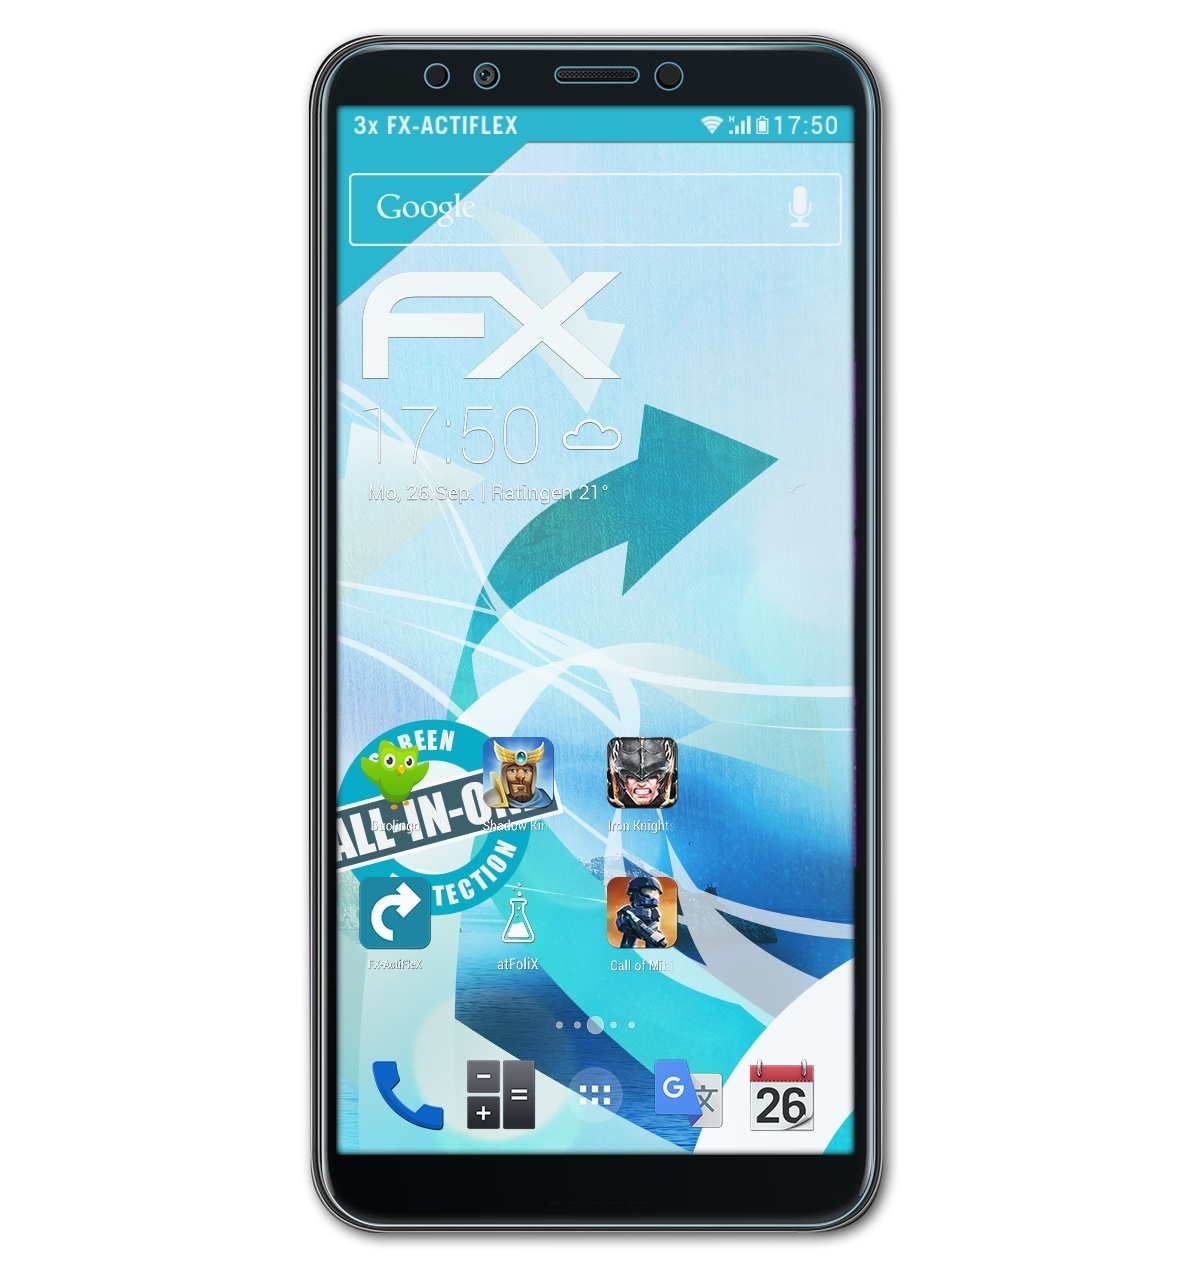 ATFOLIX Y7 Huawei FX-ActiFleX 2018) 3x Displayschutz(für Prime